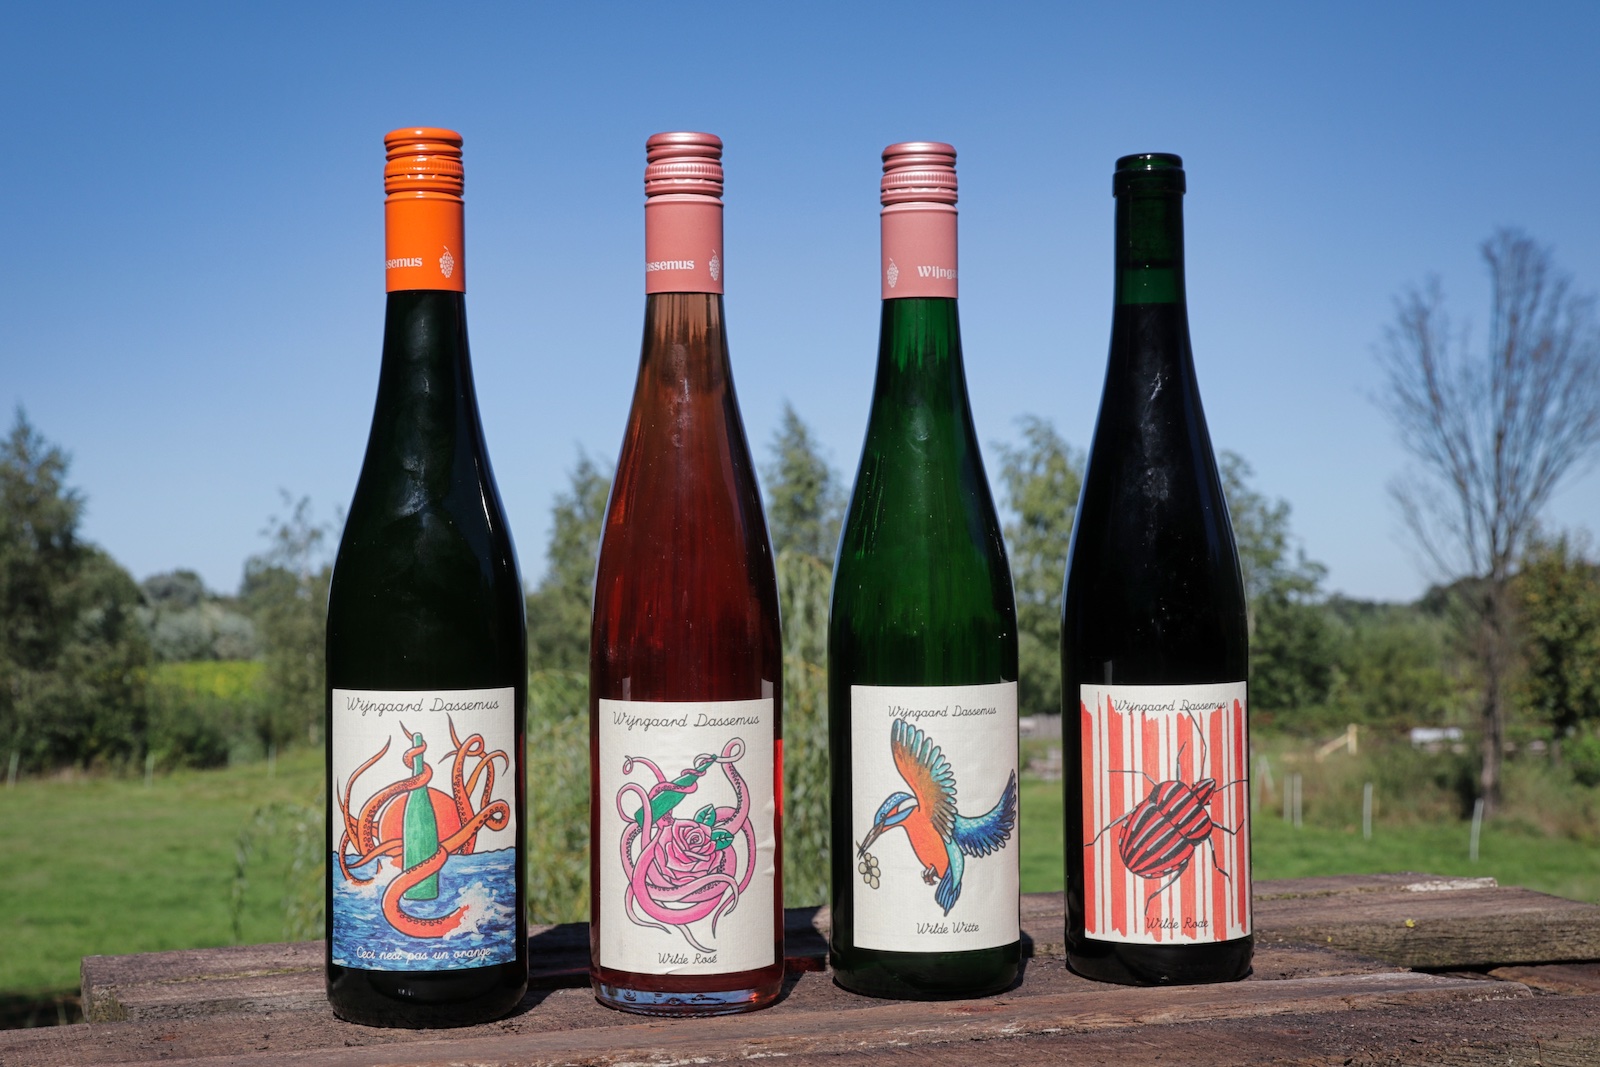 Wines of Wijngaard Dassemus